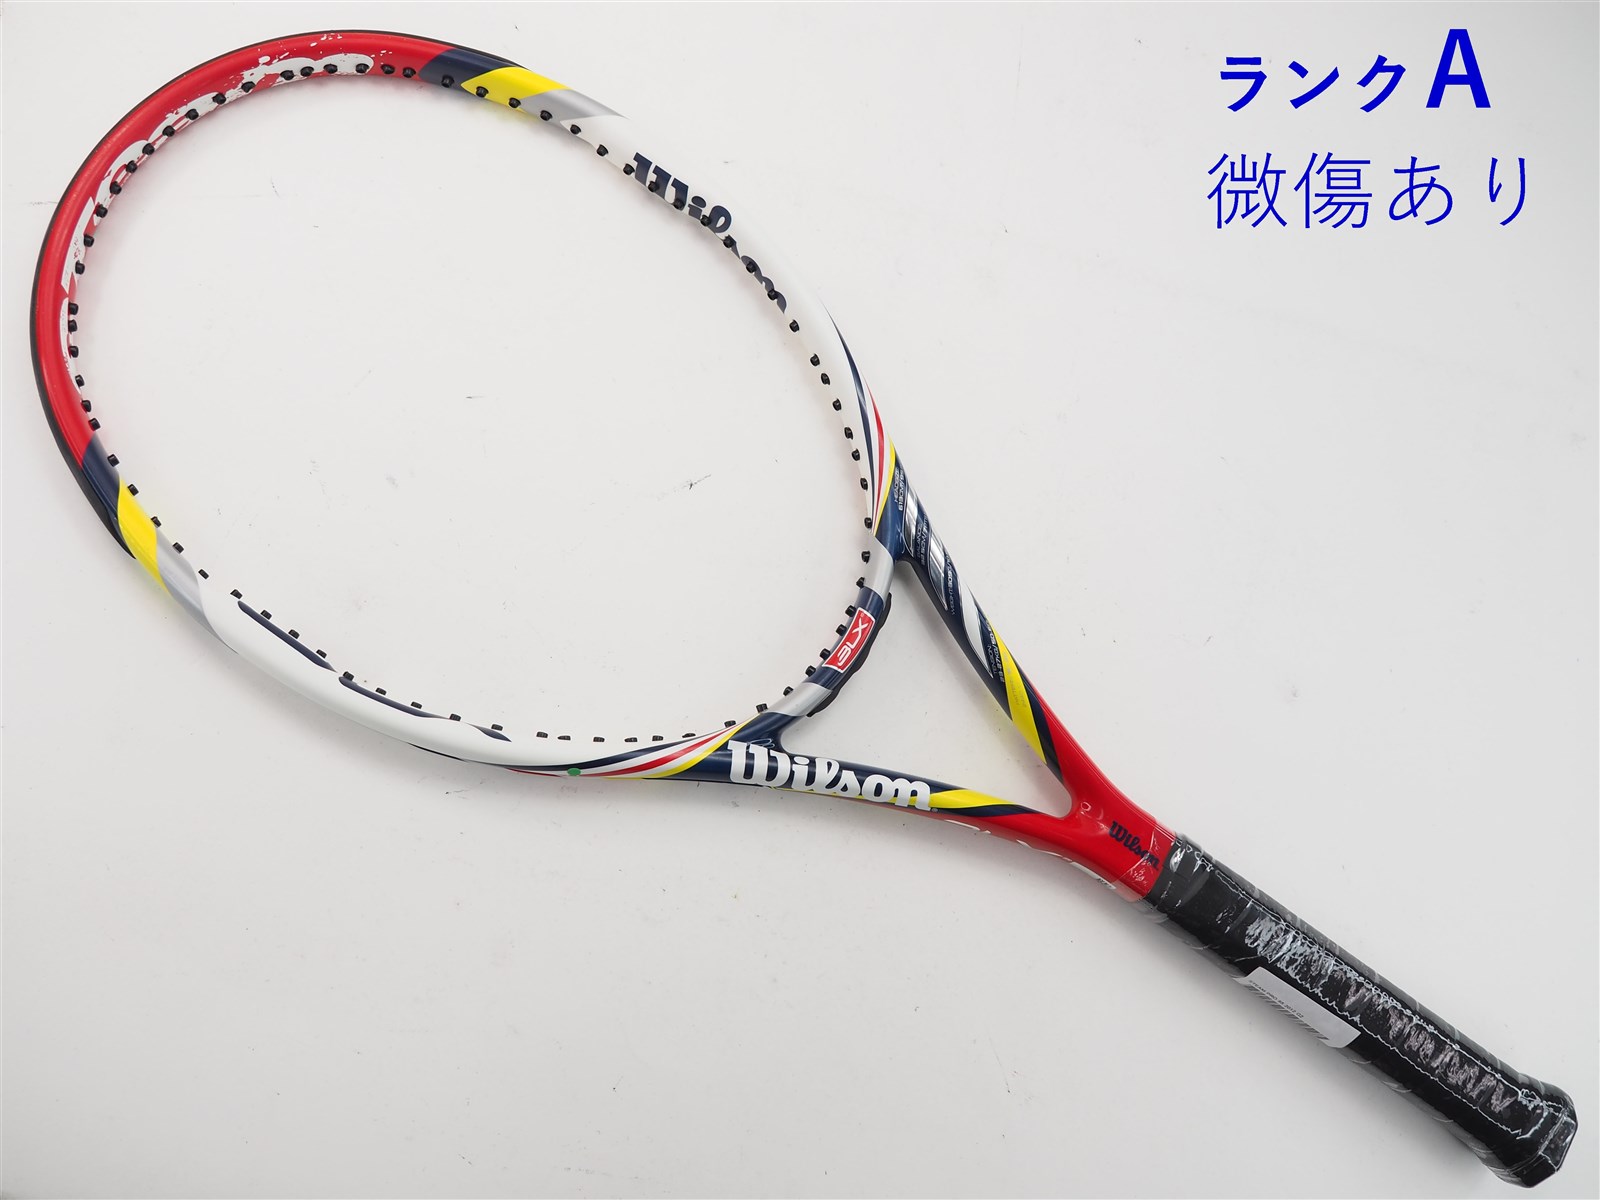 テニスラケット ウィルソン スティーム プロ 95 2012年モデル【トップバンパー割れ有り】 (L2)WILSON STEAM PRO 95 2012